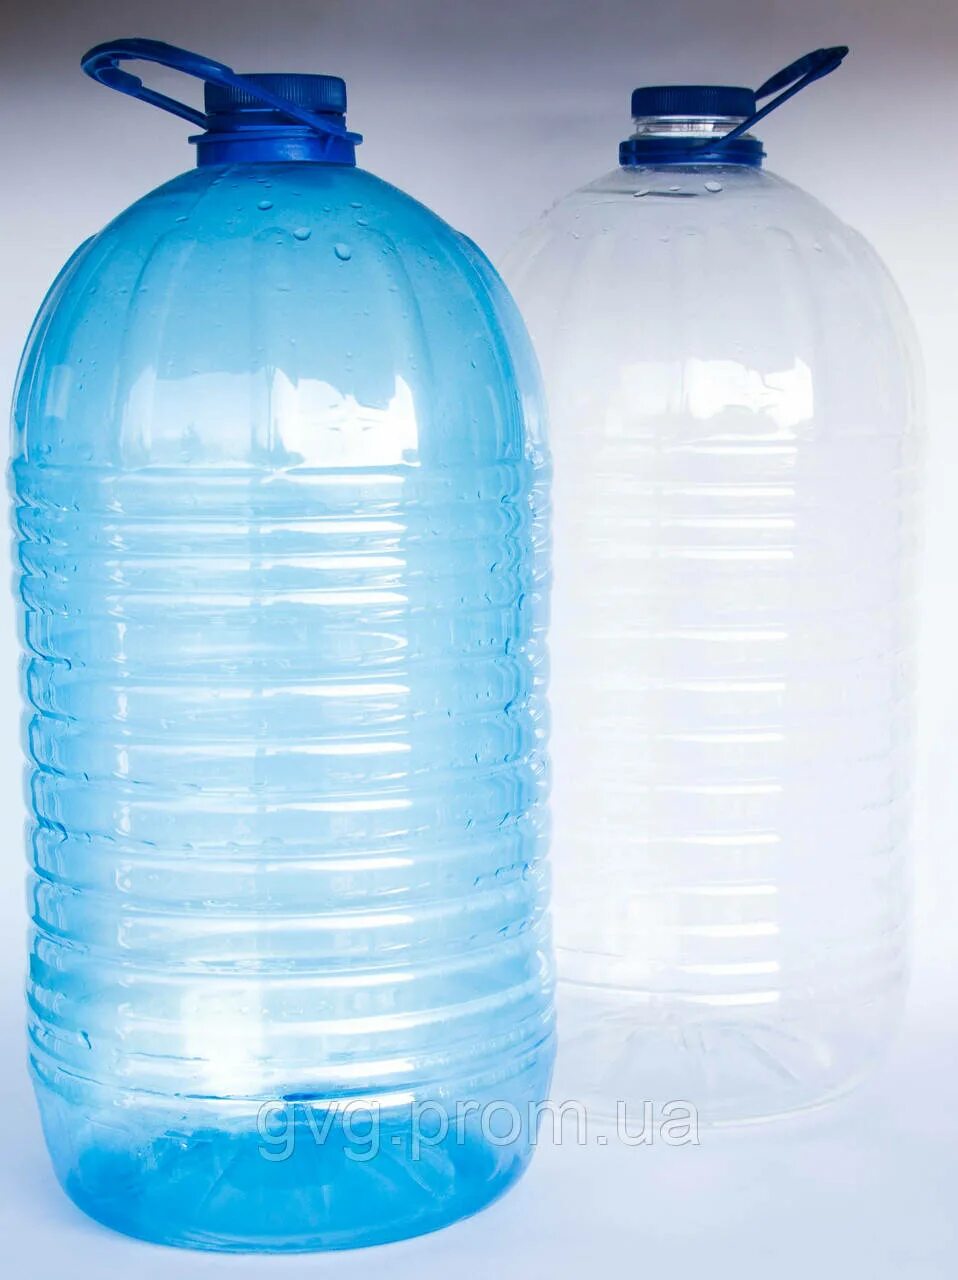 Пластиковые бутылки для воды 5 литров. ПЭТ бутылка 10 л. Бутыль 10л ПЭТ 4630057. 10 Литровые пластиковые бутылки. Бутылка 10 литров пластиковая.